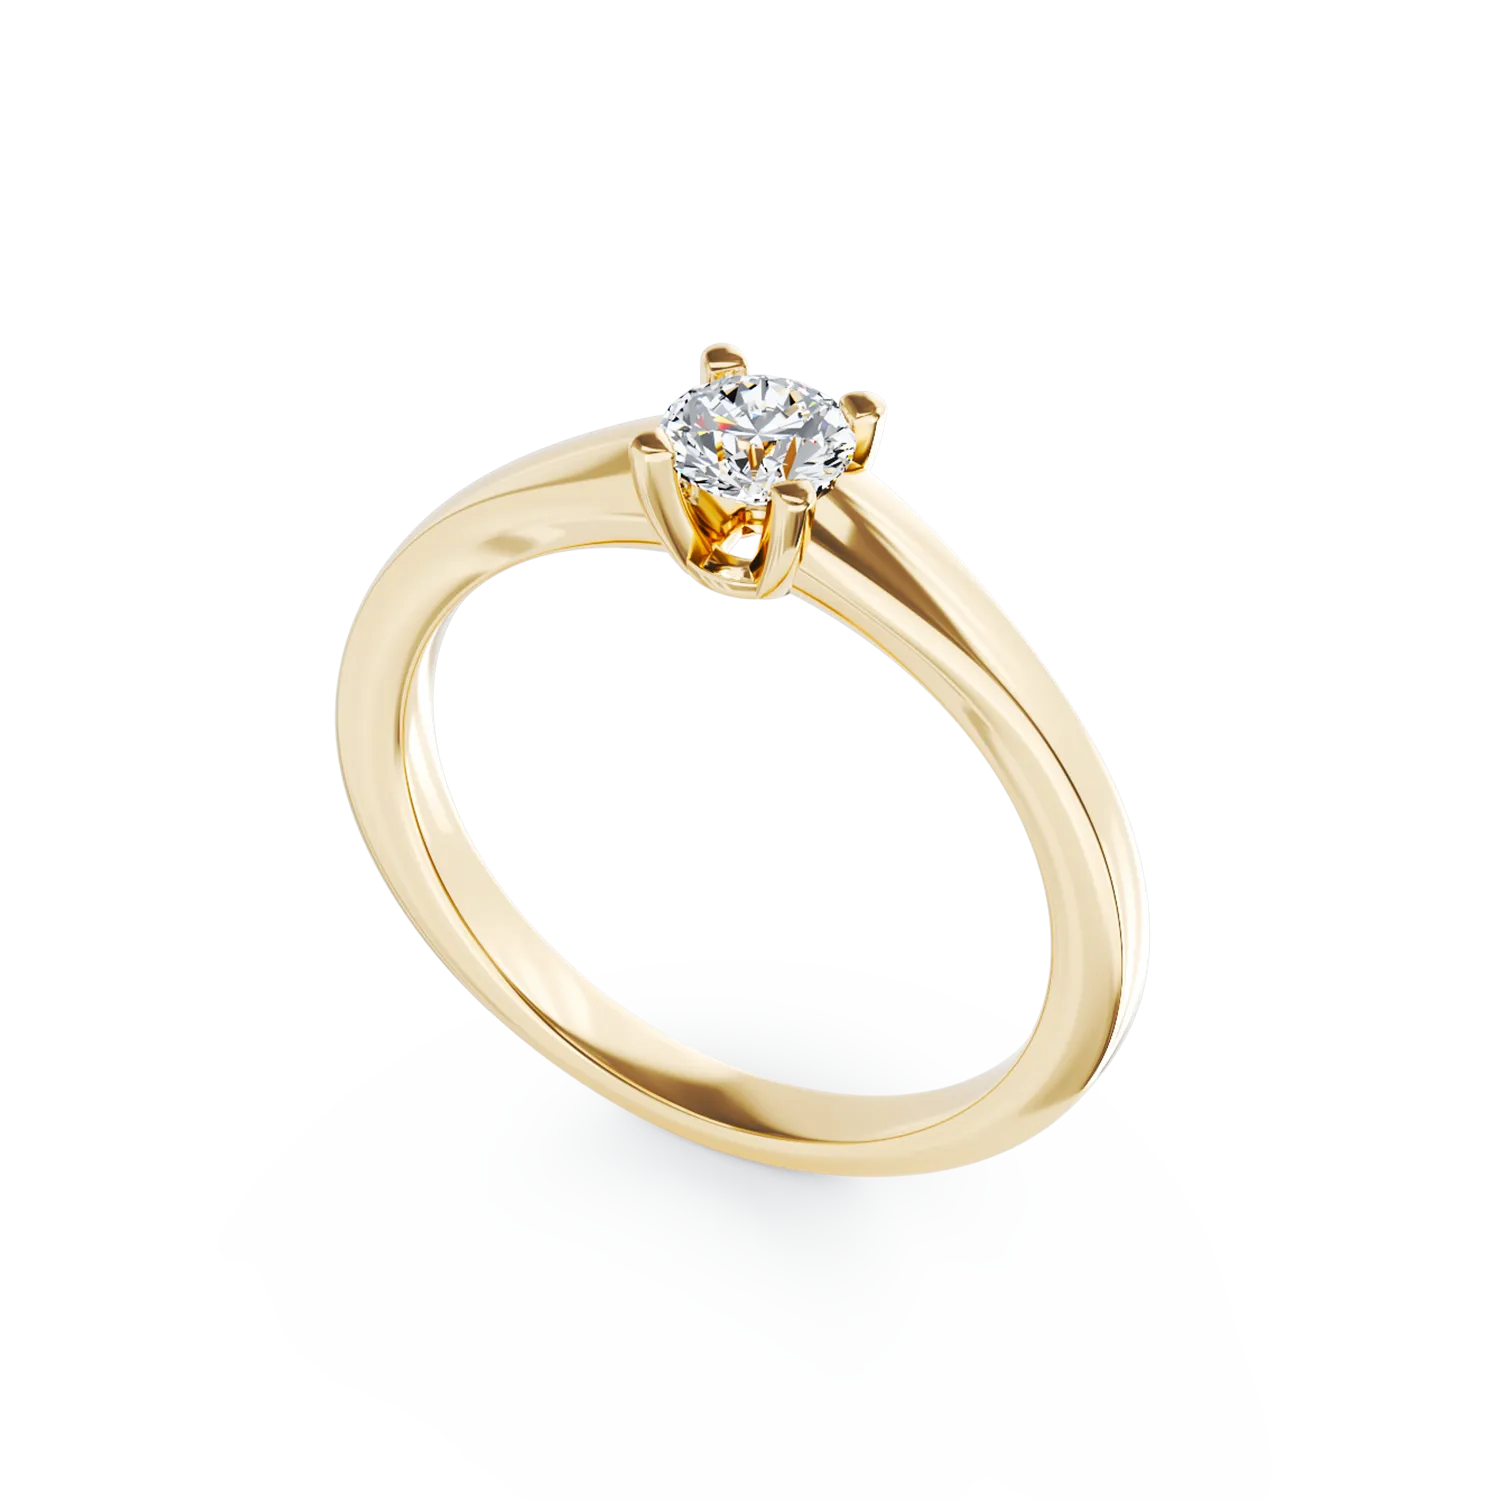 Eljegyzési gyűrű 18K-os sárga aranyból 0,24ct gyémánttal. Gramm: 2,30